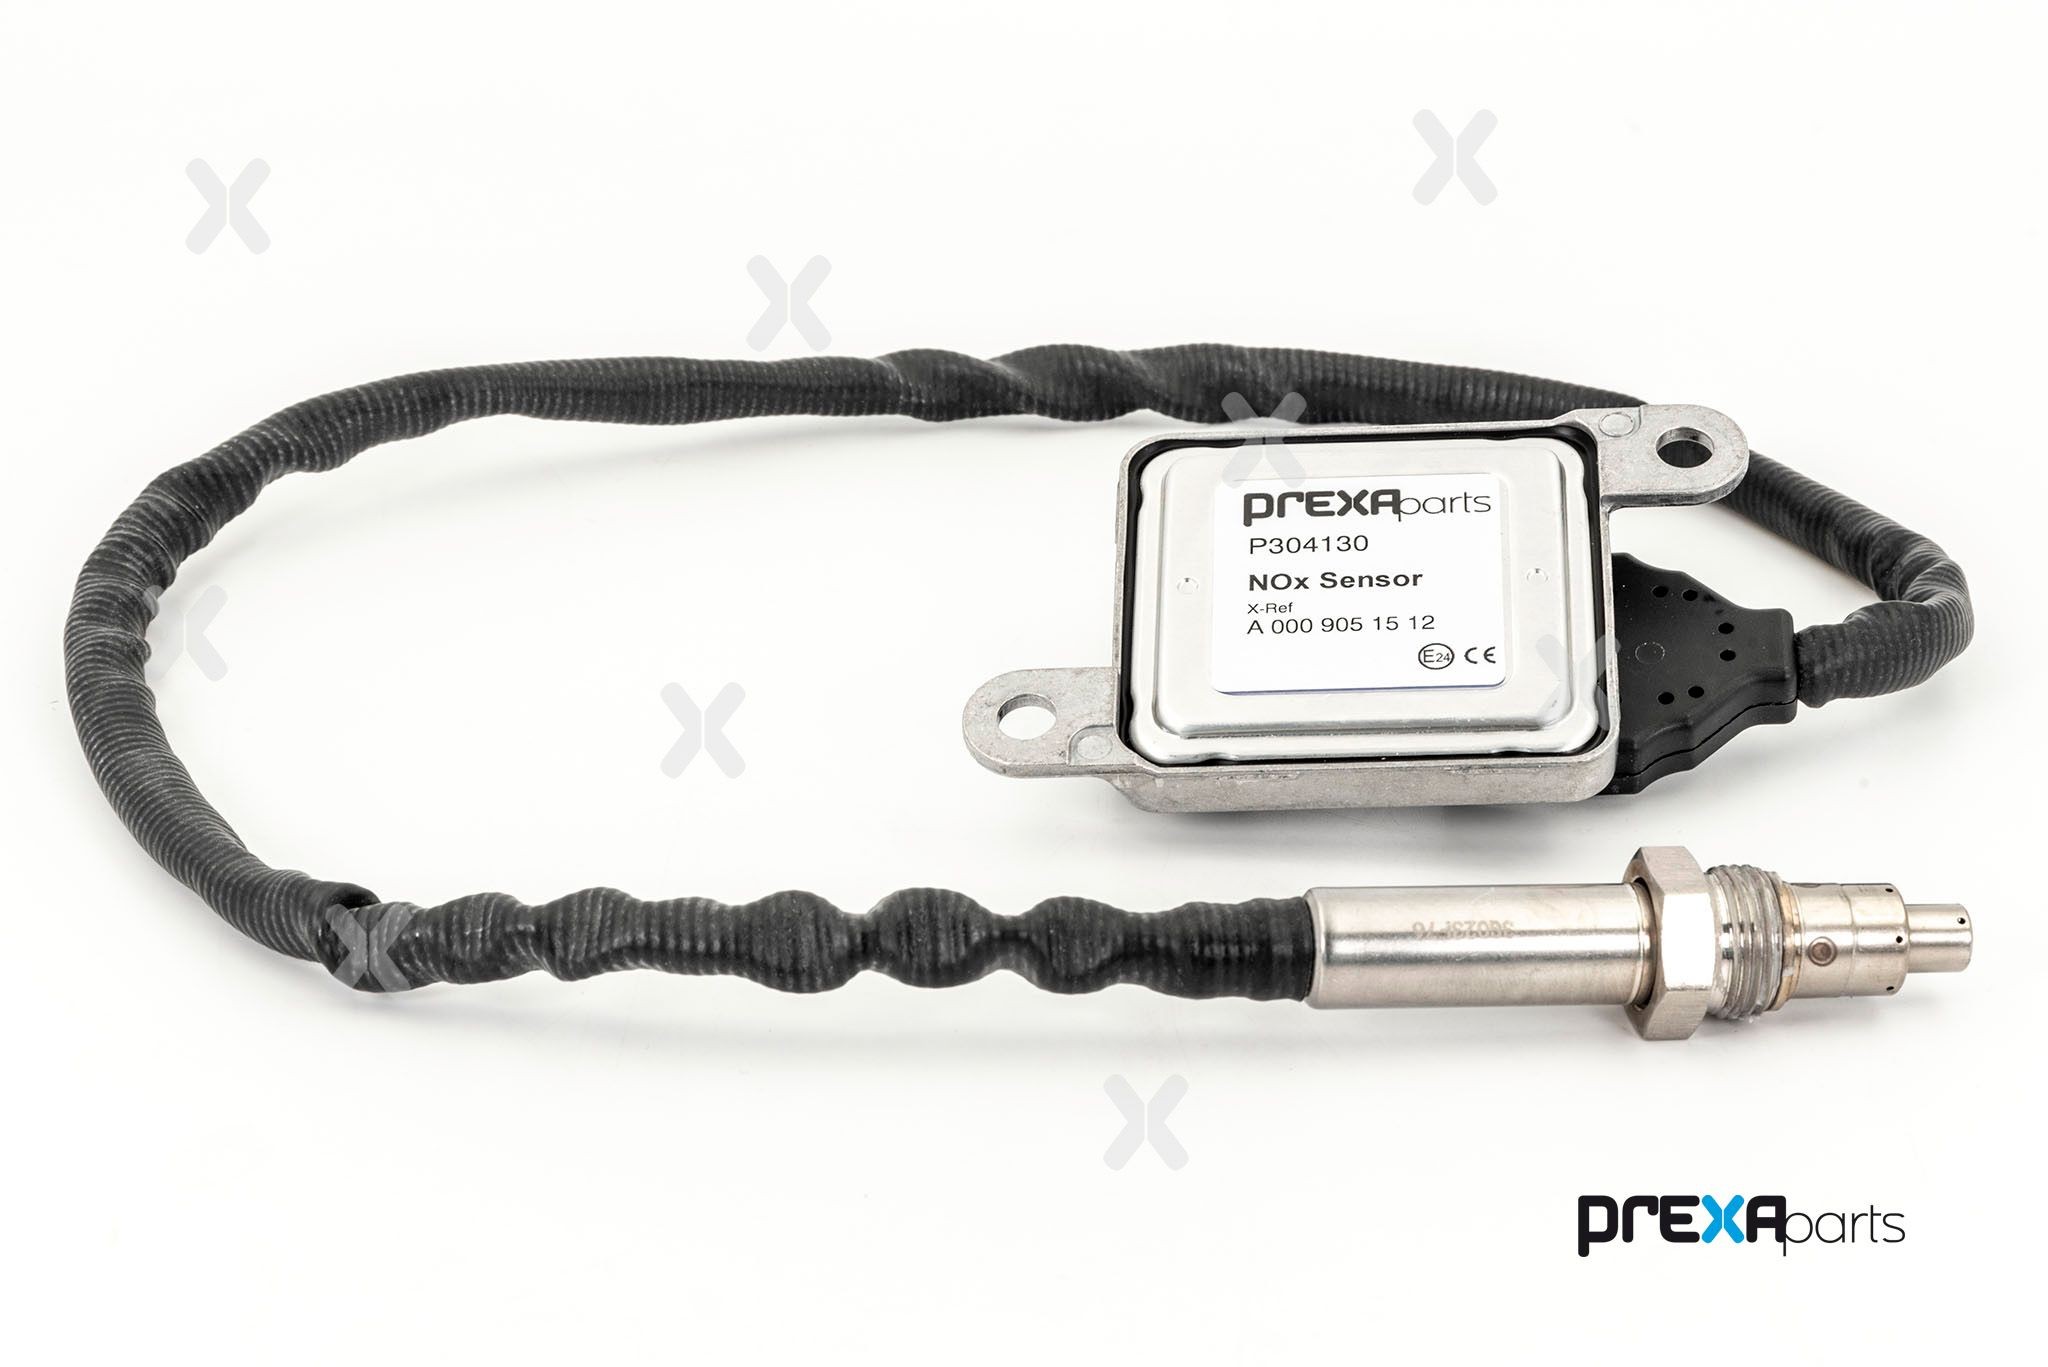 PREXAparts NOx Sensor, urea injection P304130 buy